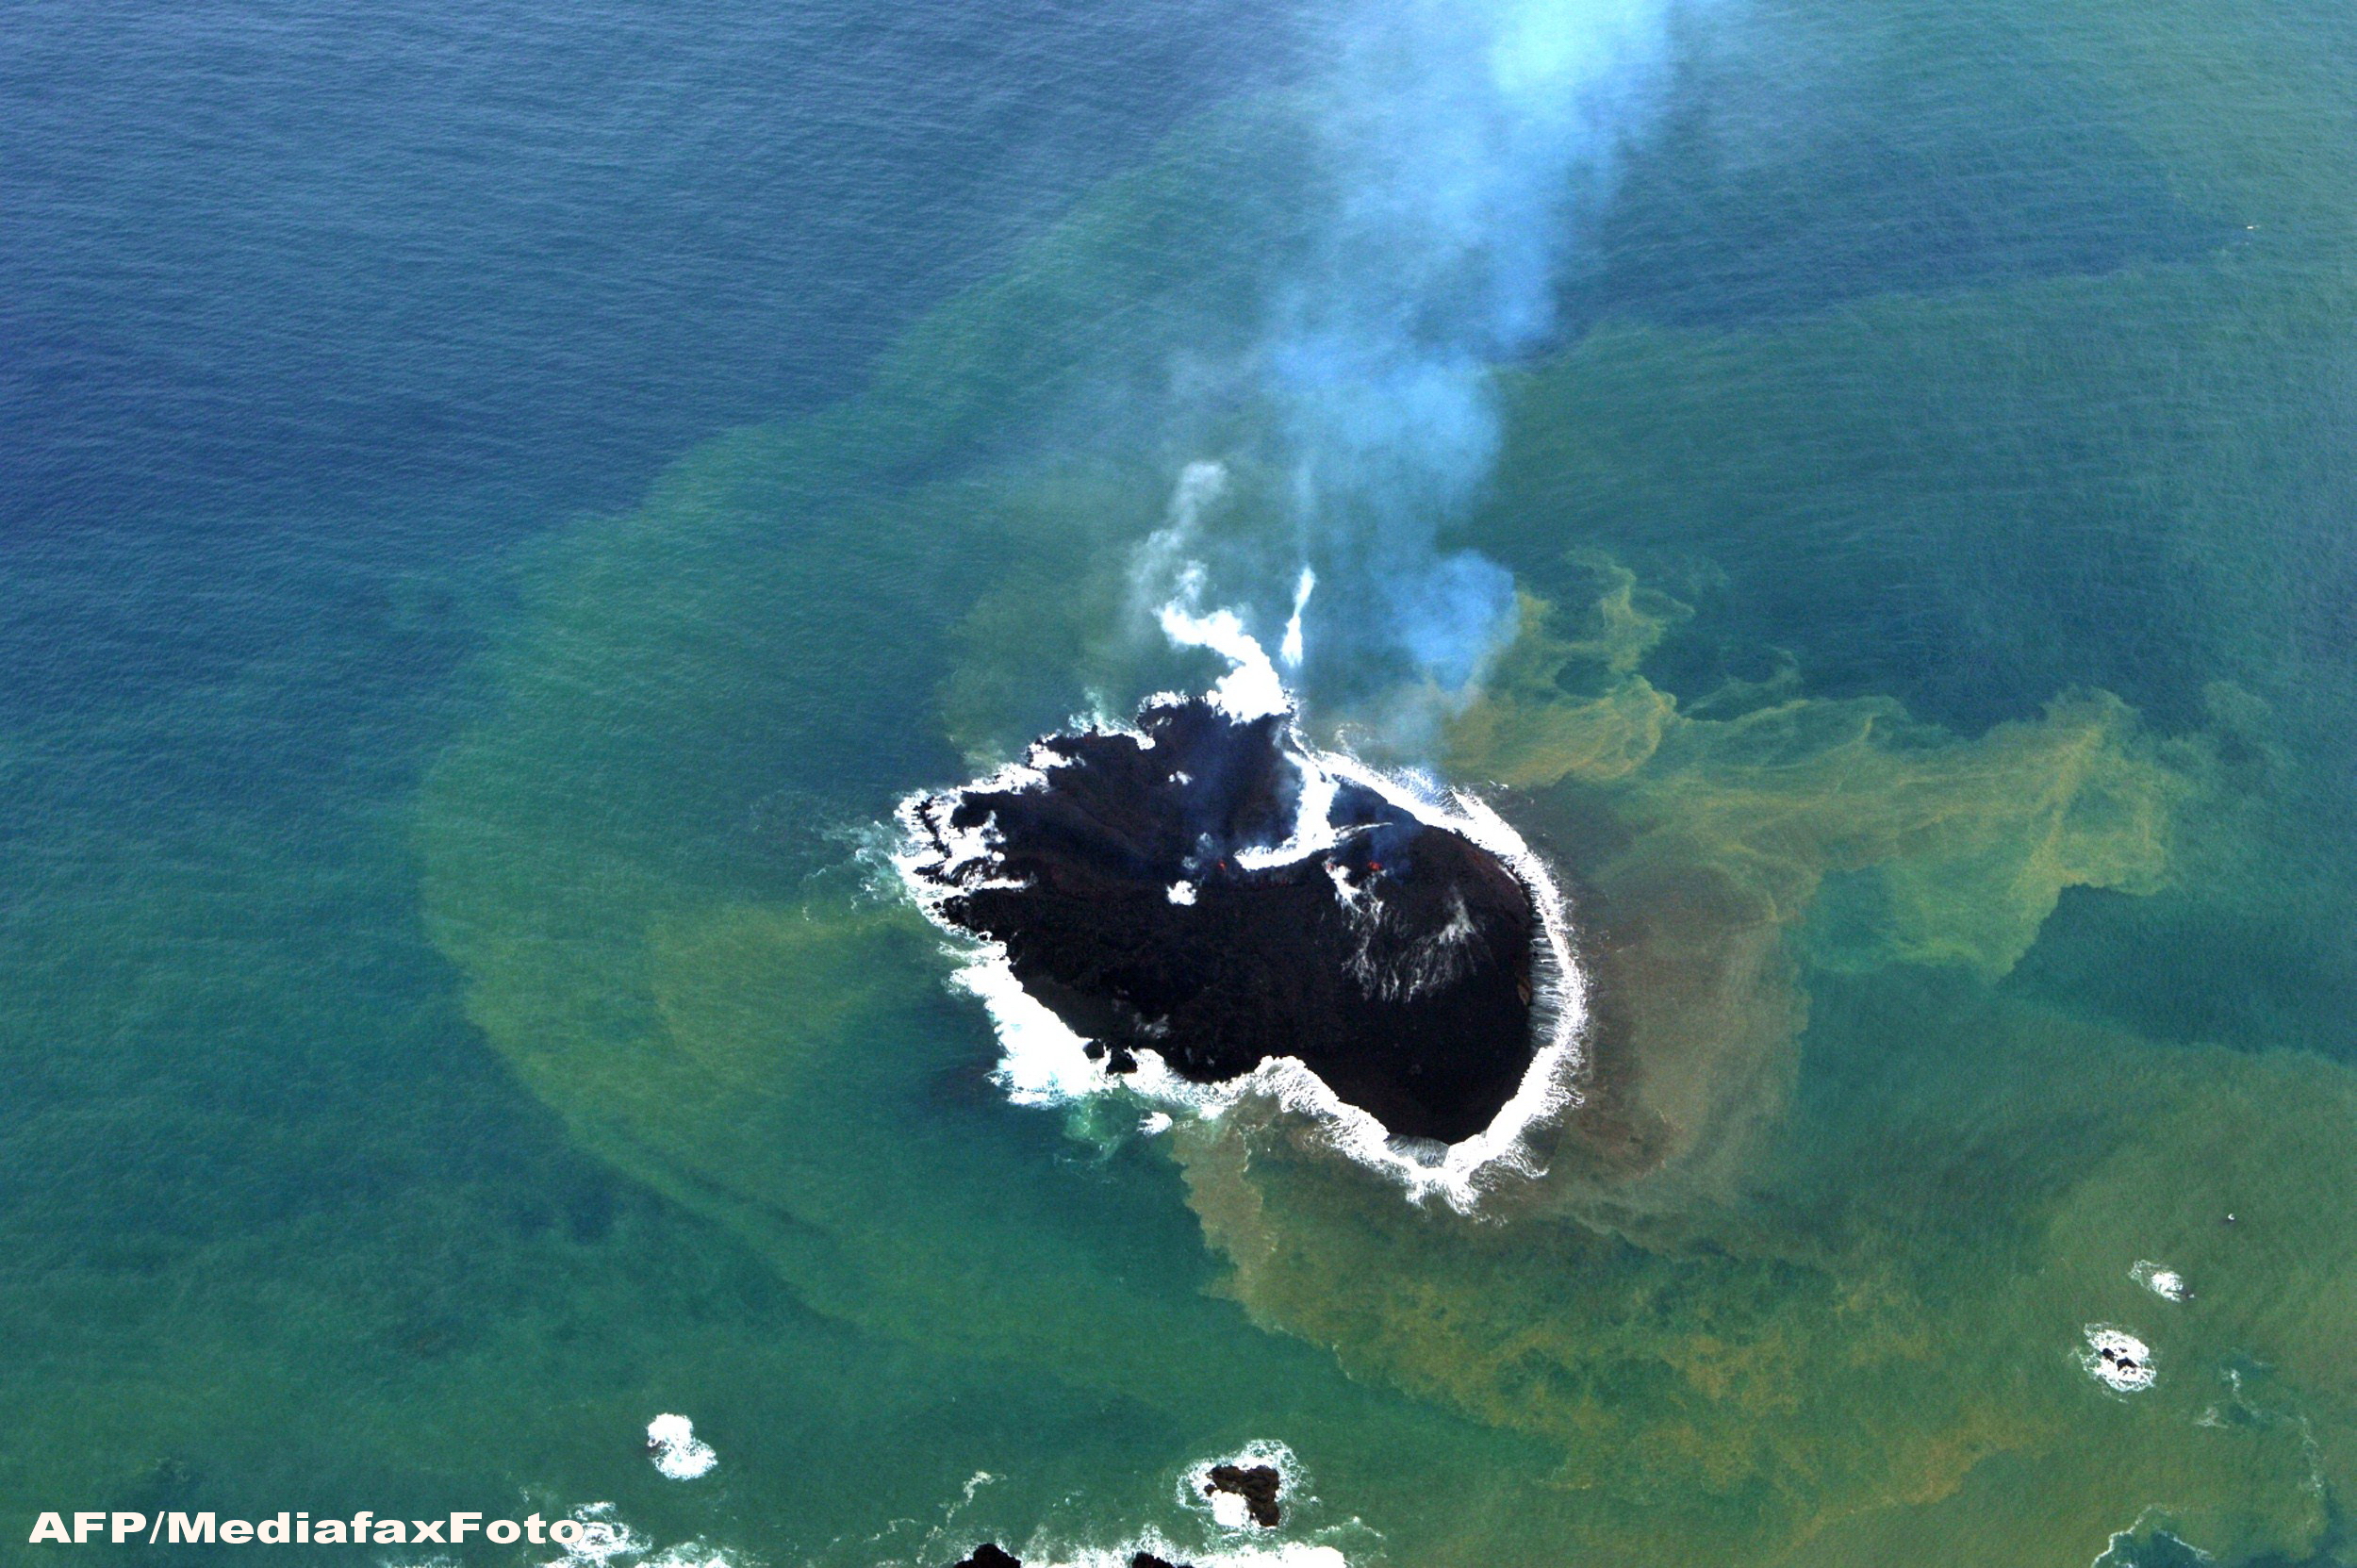 Alerta de tsunami in Japonia. Lava unei insule vulcanice, aflata in eruptie, ar putea provoca o tragedie. GALERIE FOTO - Imaginea 3